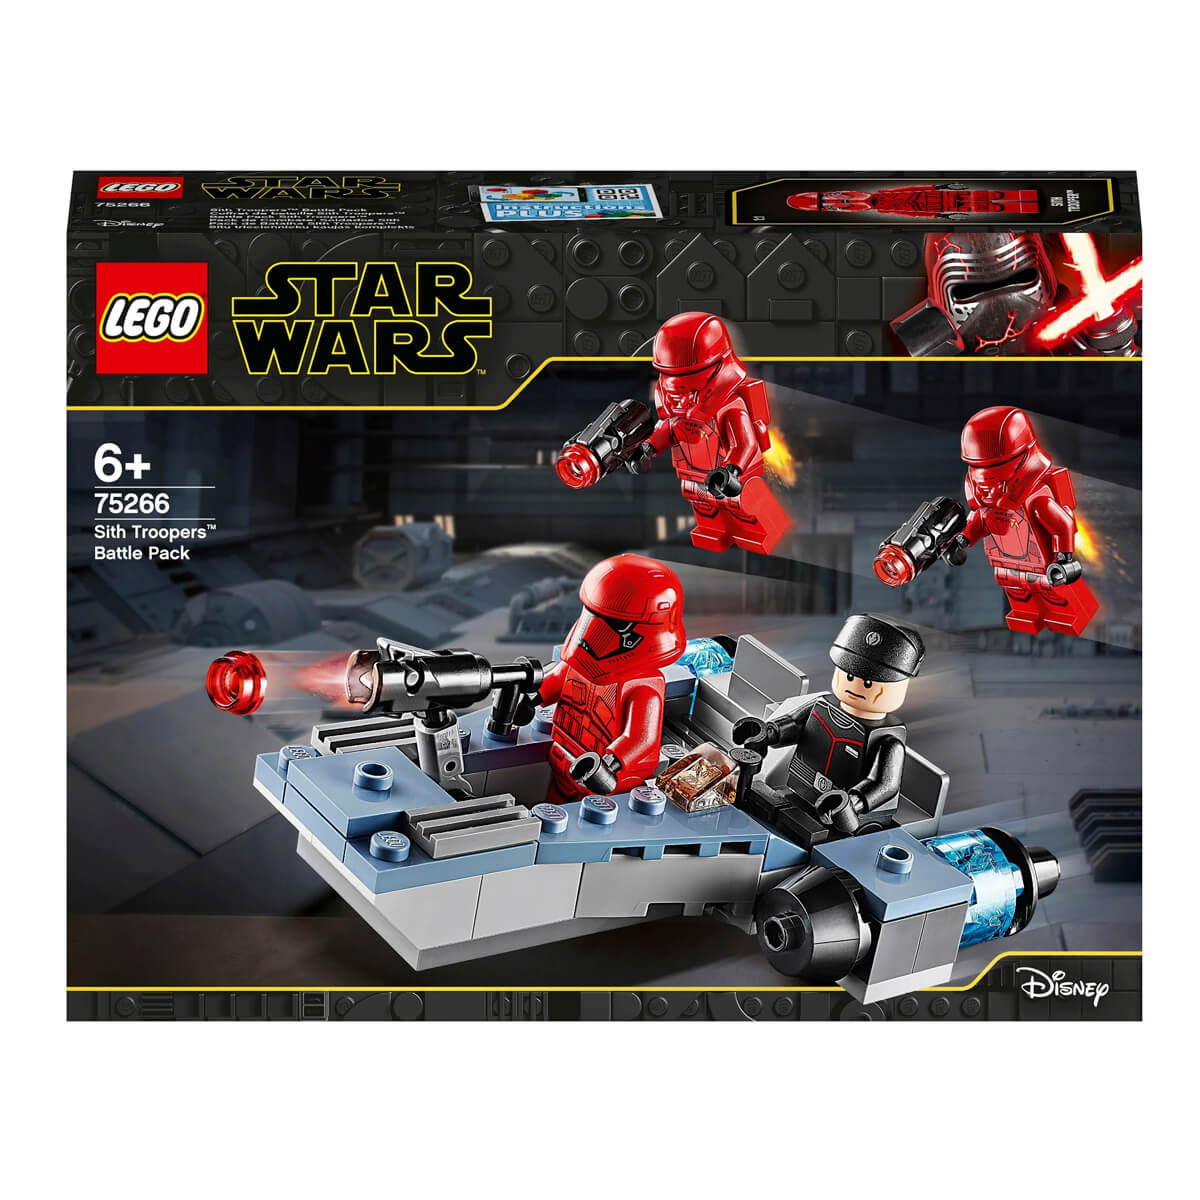 Конструктор LEGO Star Wars 75266 Episode IX Боевой набор конструктор lego star wars 75266 episode ix боевой набор штурмовики ситхов 105 дет